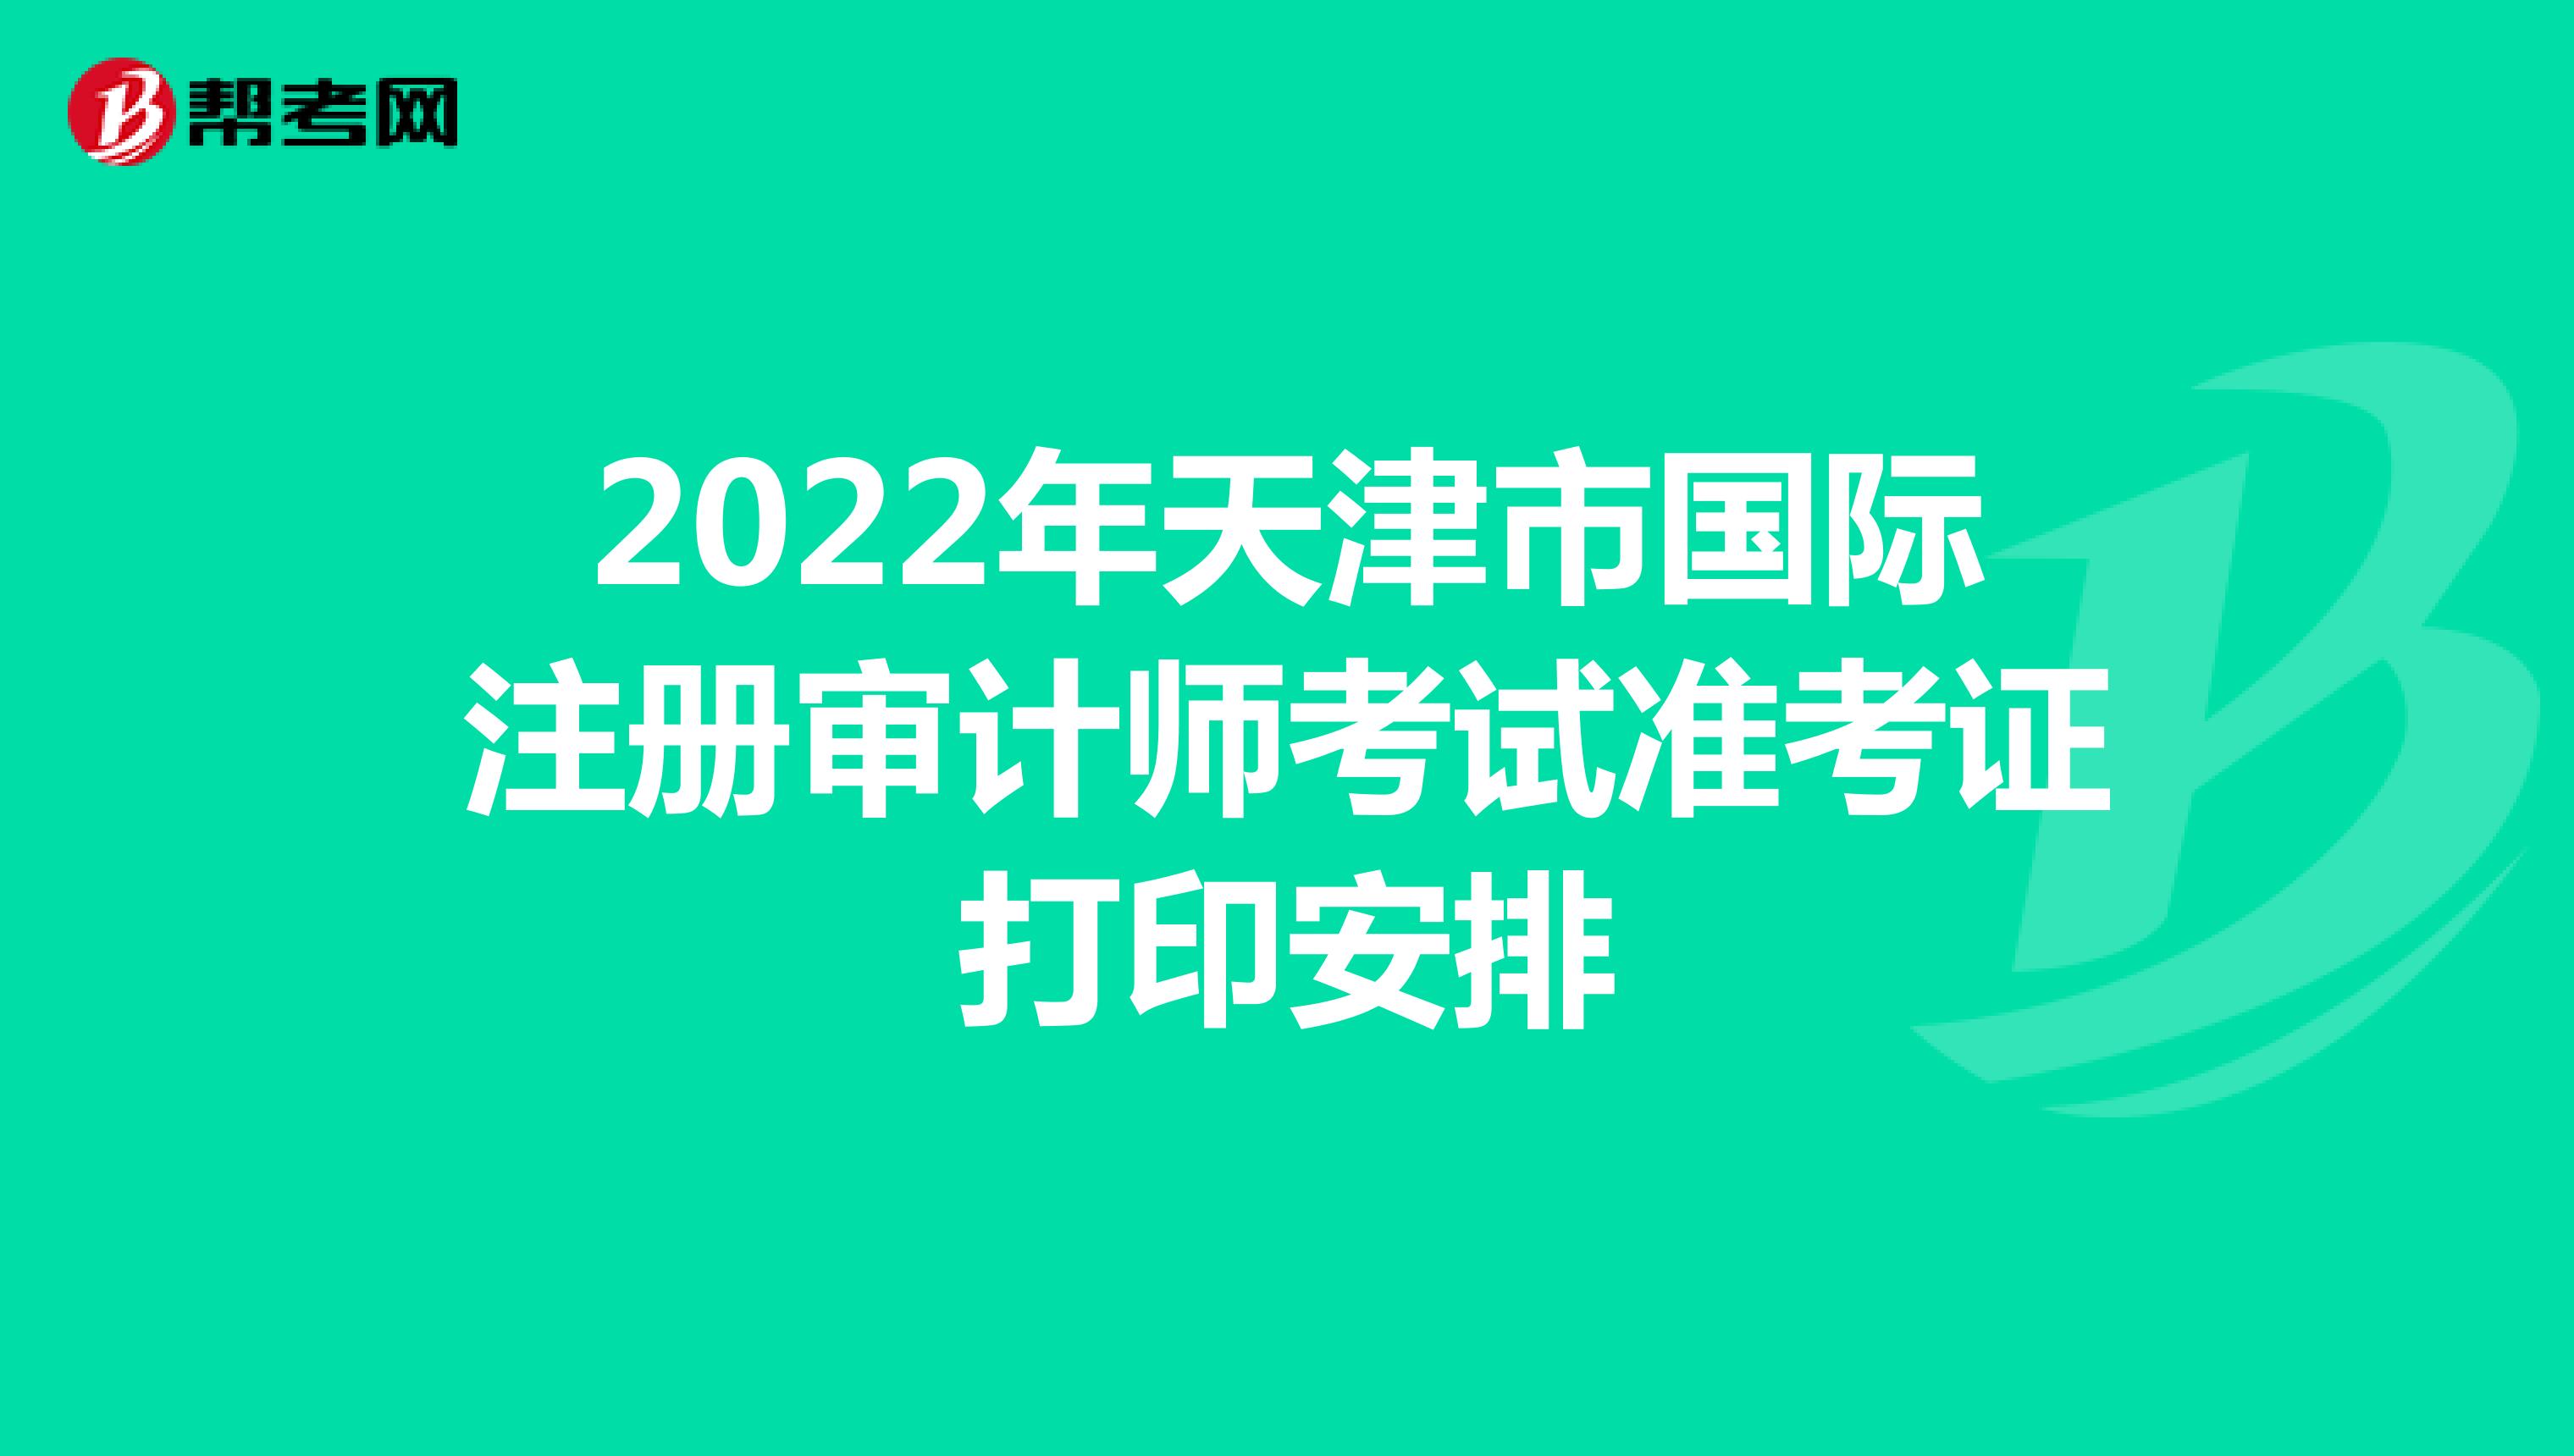 2022年天津市国际注册审计师考试准考证打印安排